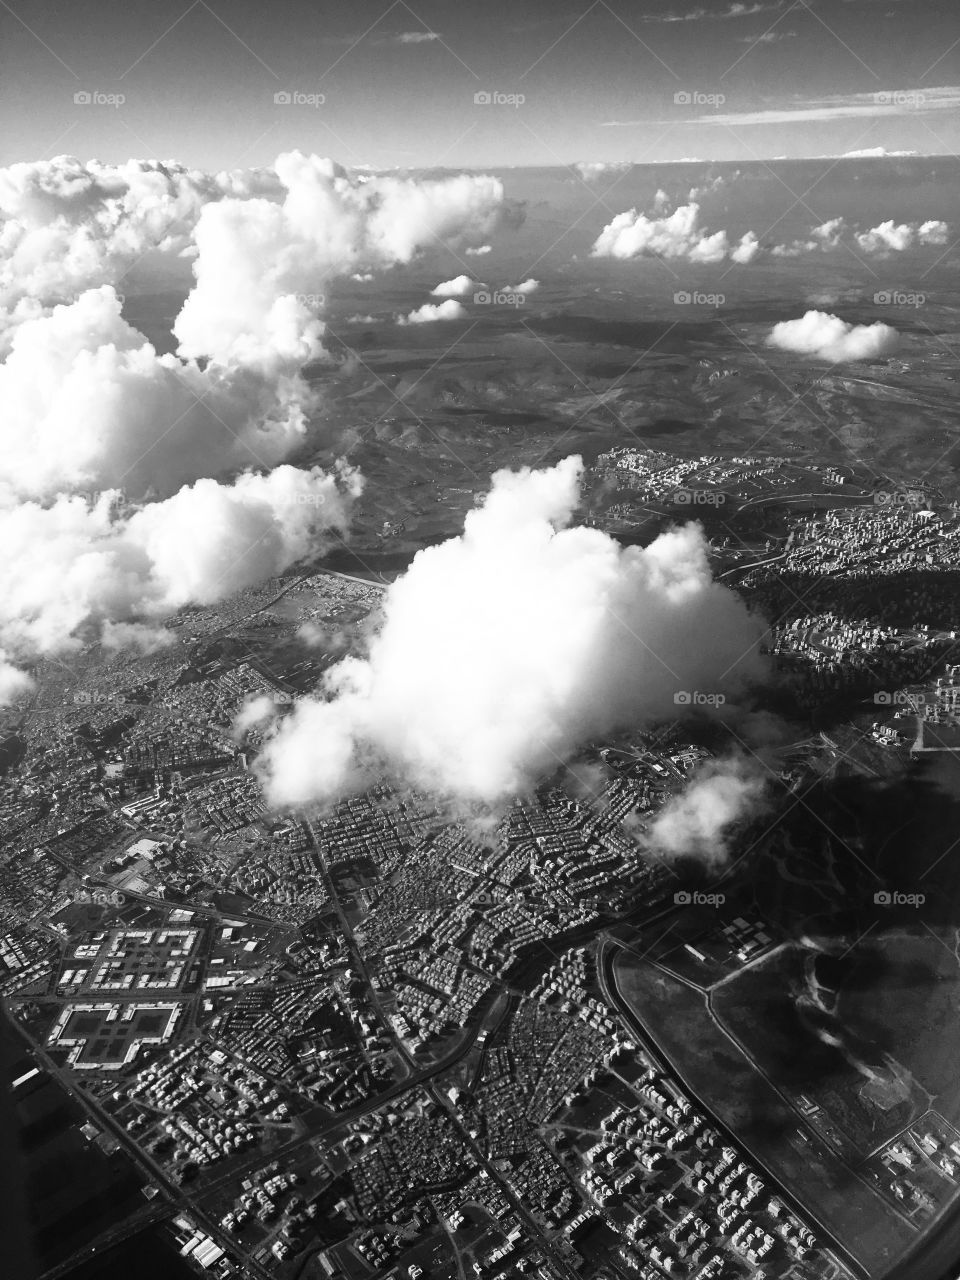 Sanliurfa city from an aircraft